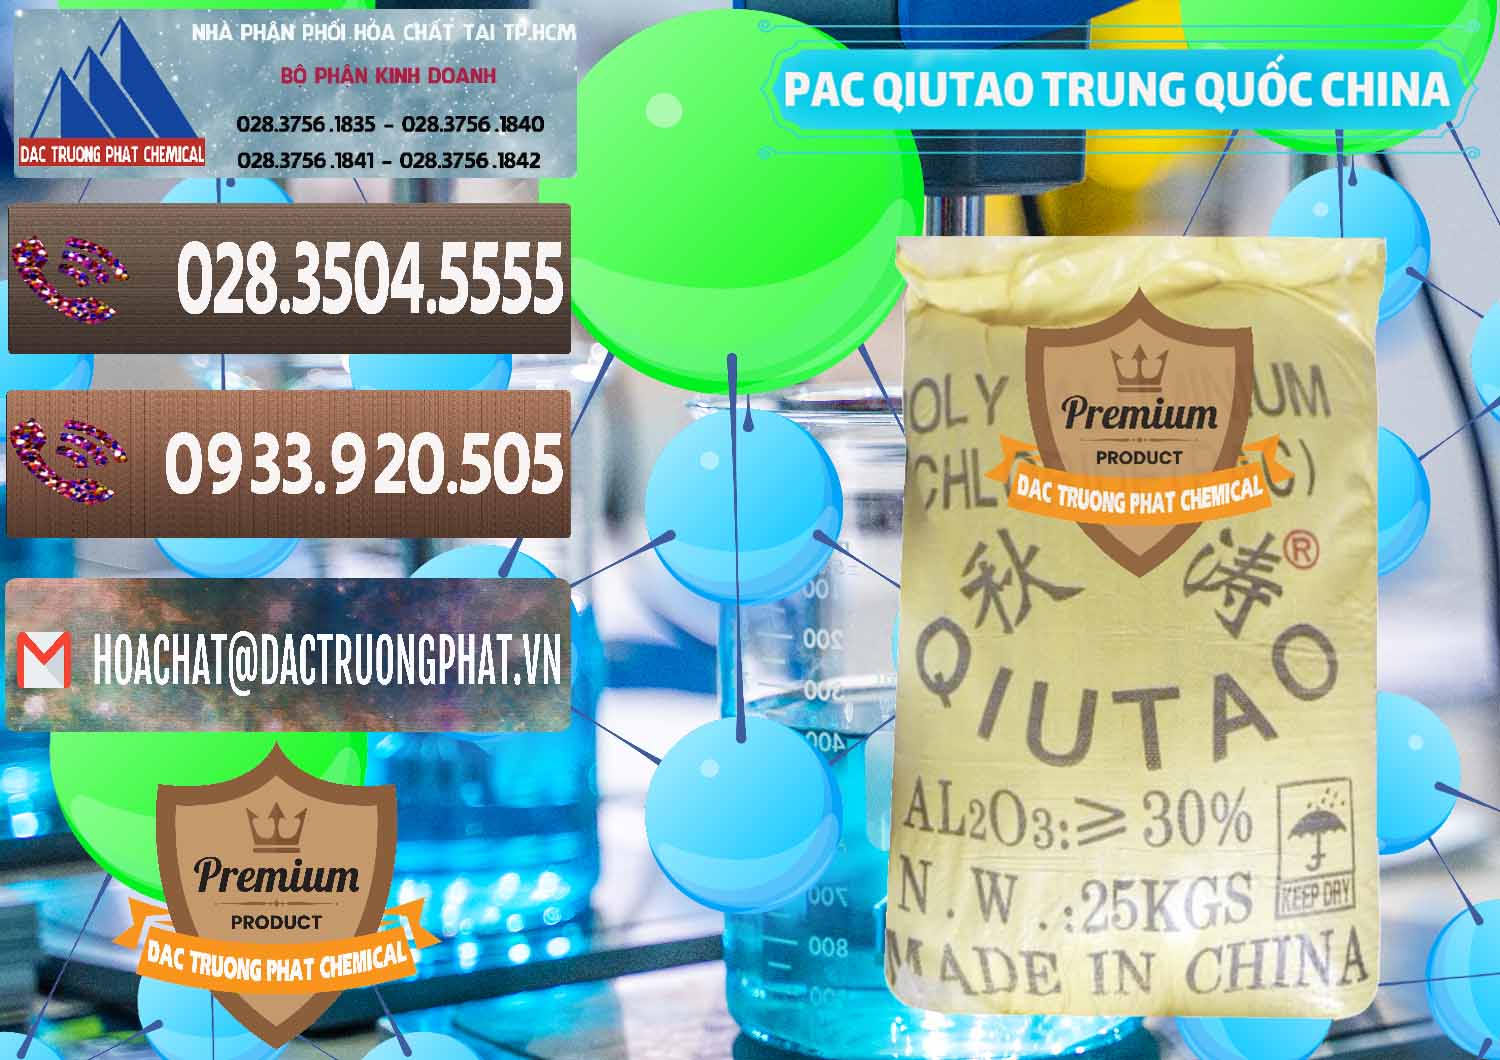 Công ty bán _ cung ứng PAC - Polyaluminium Chloride Qiutao Trung Quốc China - 0267 - Cty cung ứng _ phân phối hóa chất tại TP.HCM - hoachatviet.net